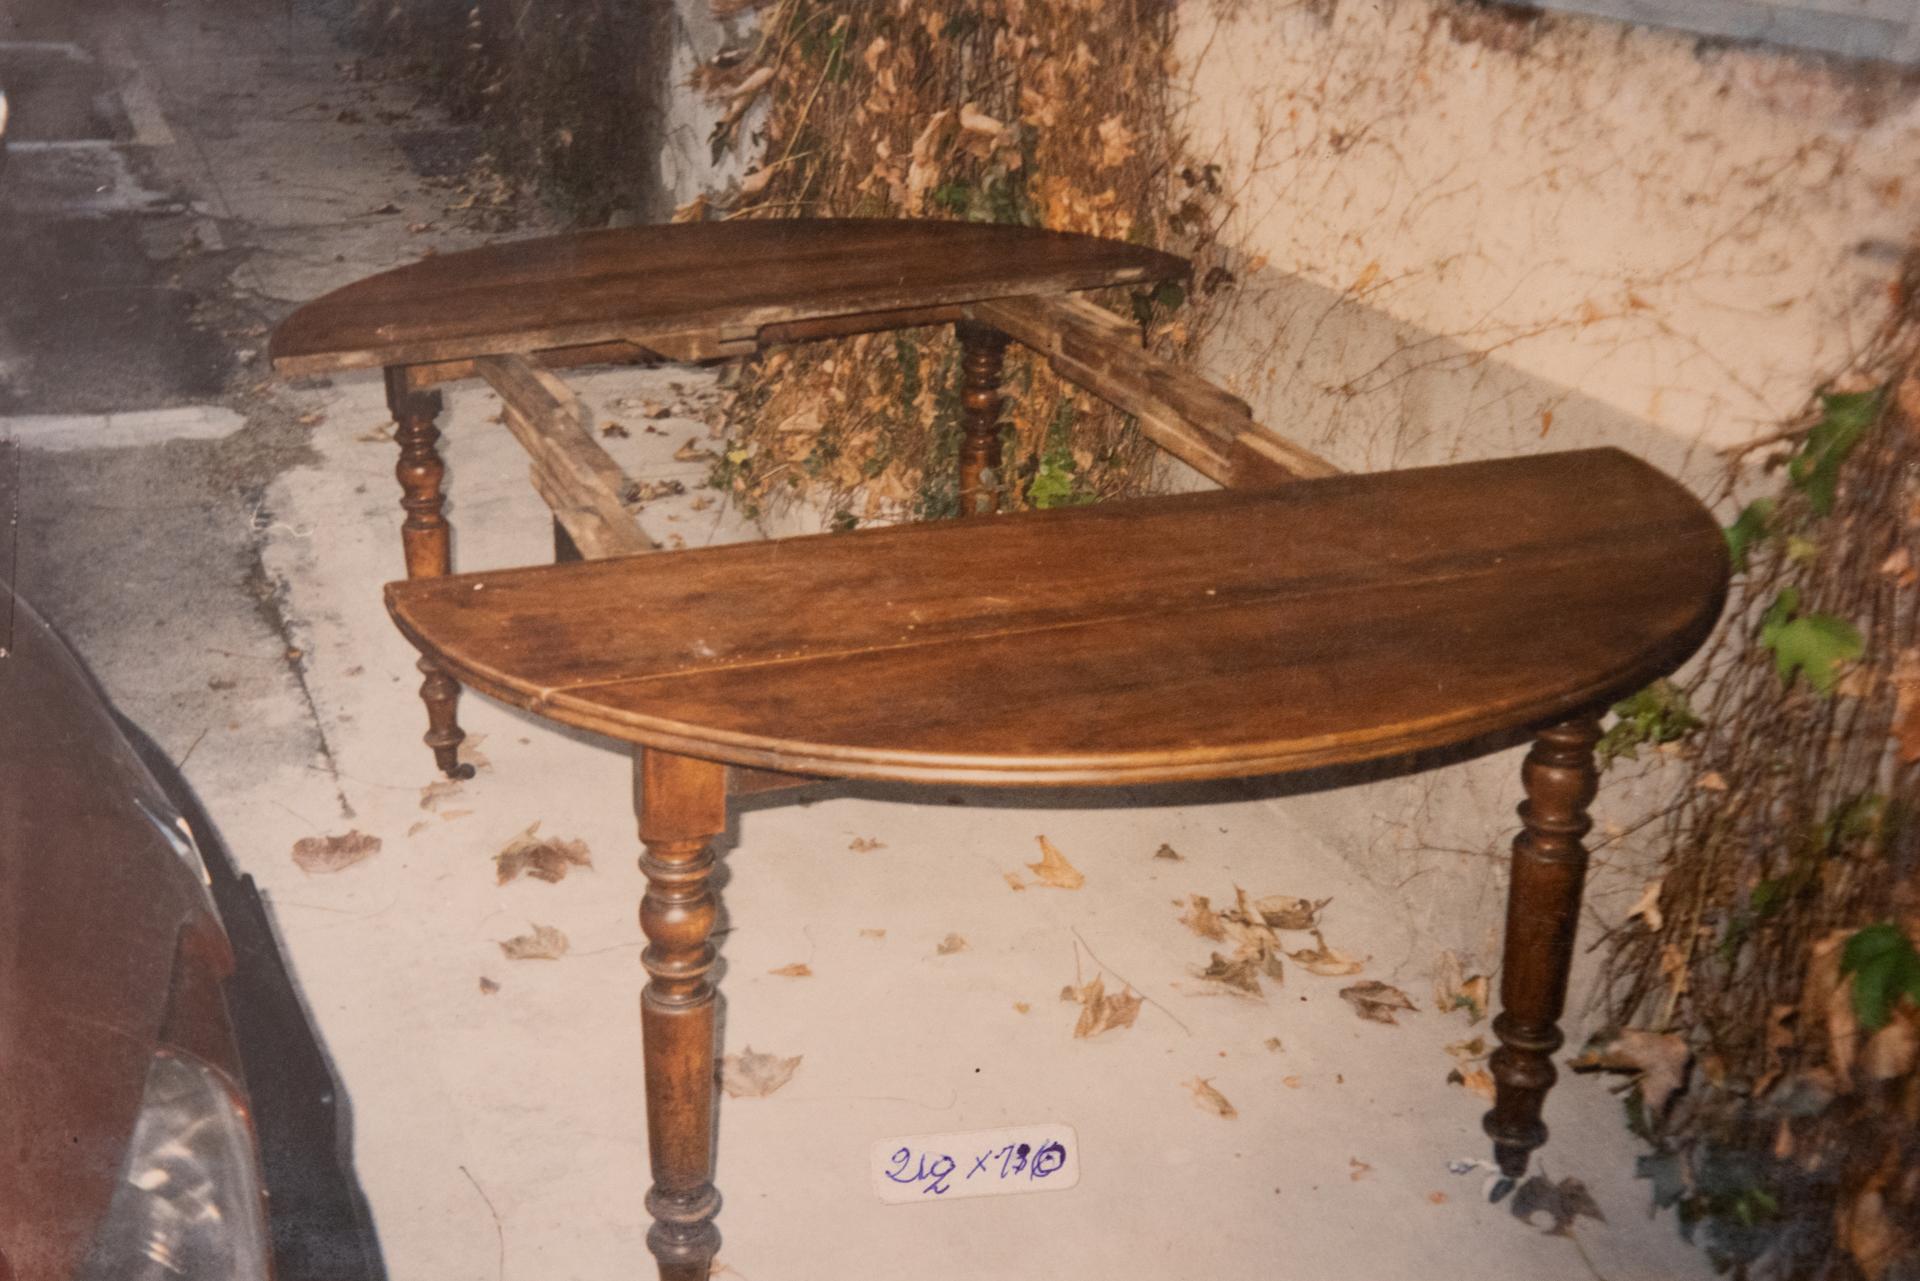 M/1329 - Table ovale ancienne à rallonges et à roulettes. Il peut être utilisé de différentes manières :
fermé en tant que console ;  ouvrir d'un côté s'il y a peu d'espace et si vous n'avez pas besoin de tout ouvrir.  
Lorsqu'il est fermé des deux